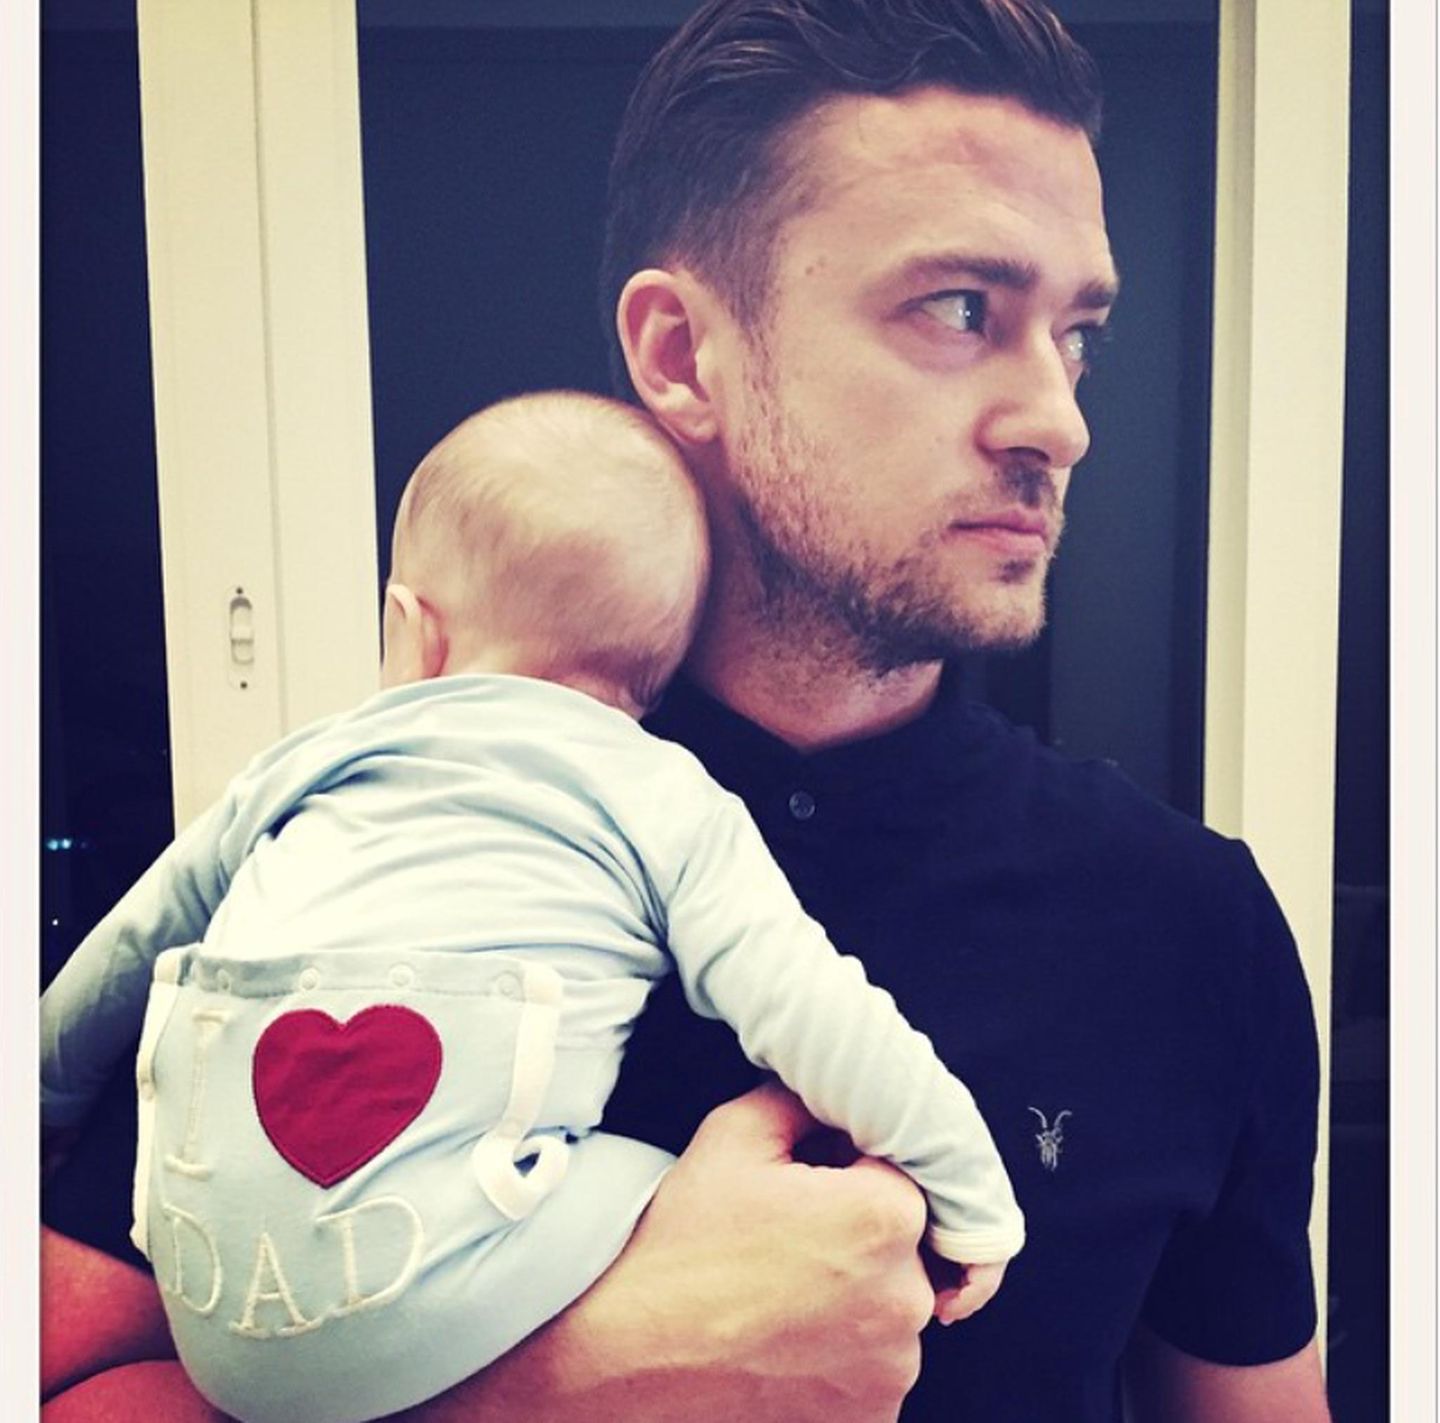 Justin Timberlake feiert mit Söhnchen Silas nicht nur selbst Vatertag, sondern beglückwünscht gleich alle anderen mit: "Muskeln anspannen am Vatertag ...#FröhlichenVatertag an alle Papas da draußen vom neuesten Mitglied der Papa-Bruderschaft!! --JT", schreibt er zu dem süßen Foto.